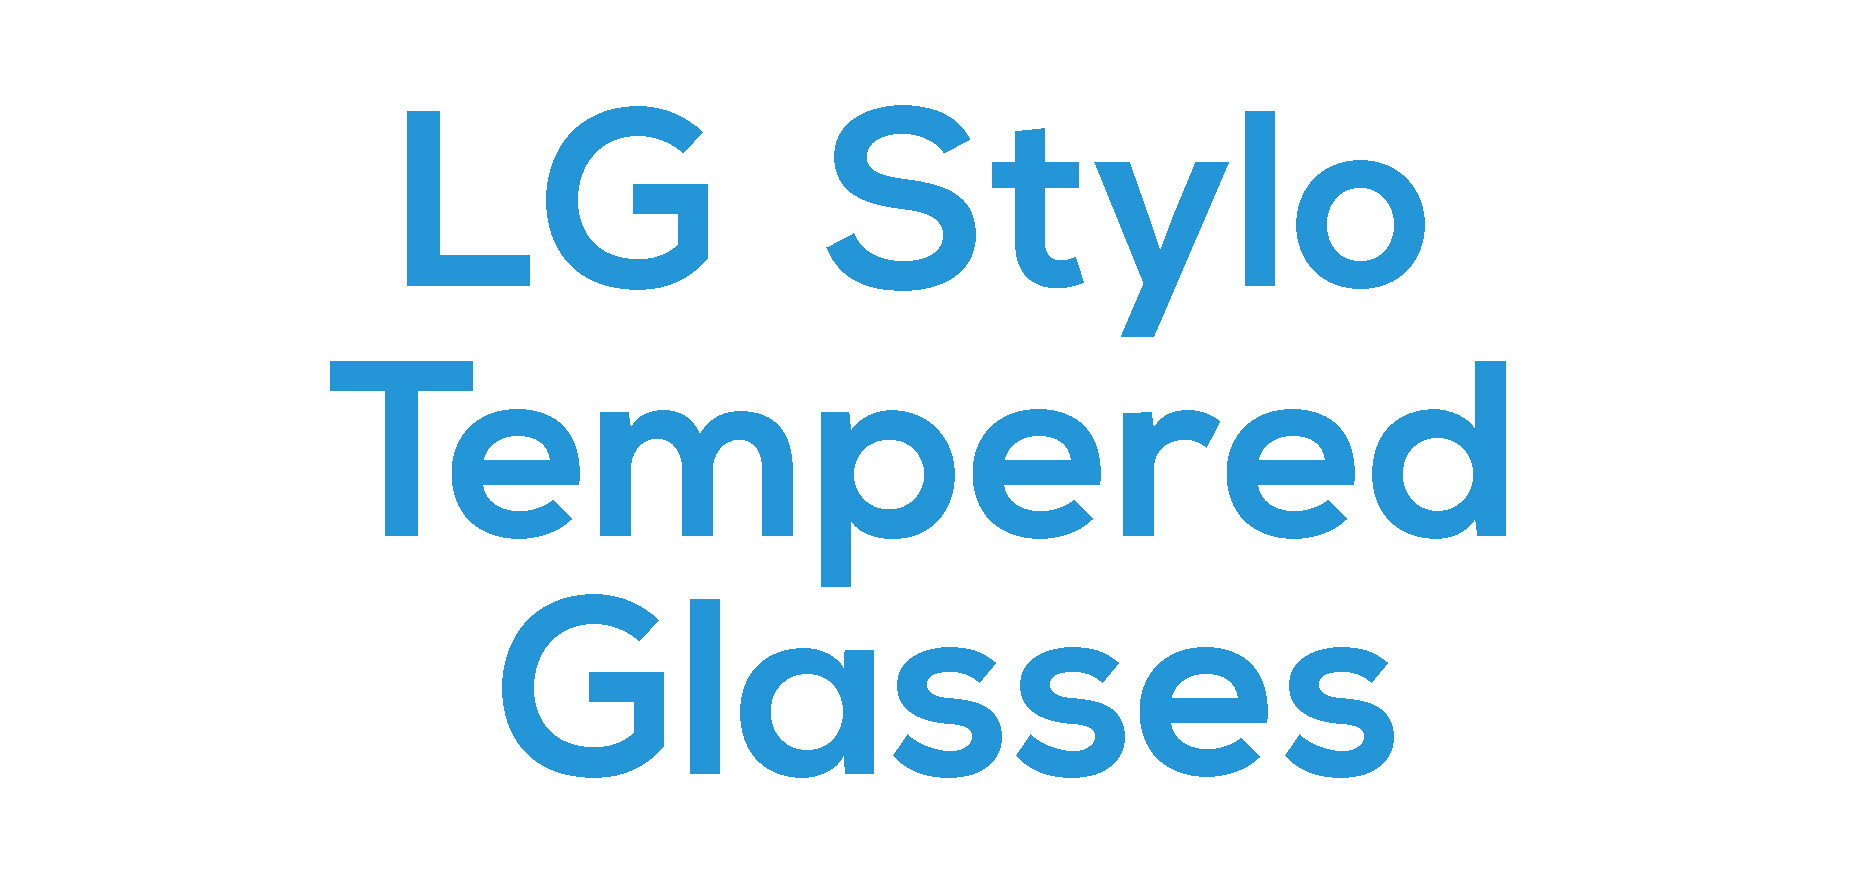 LG Stylo Tempered Glasses